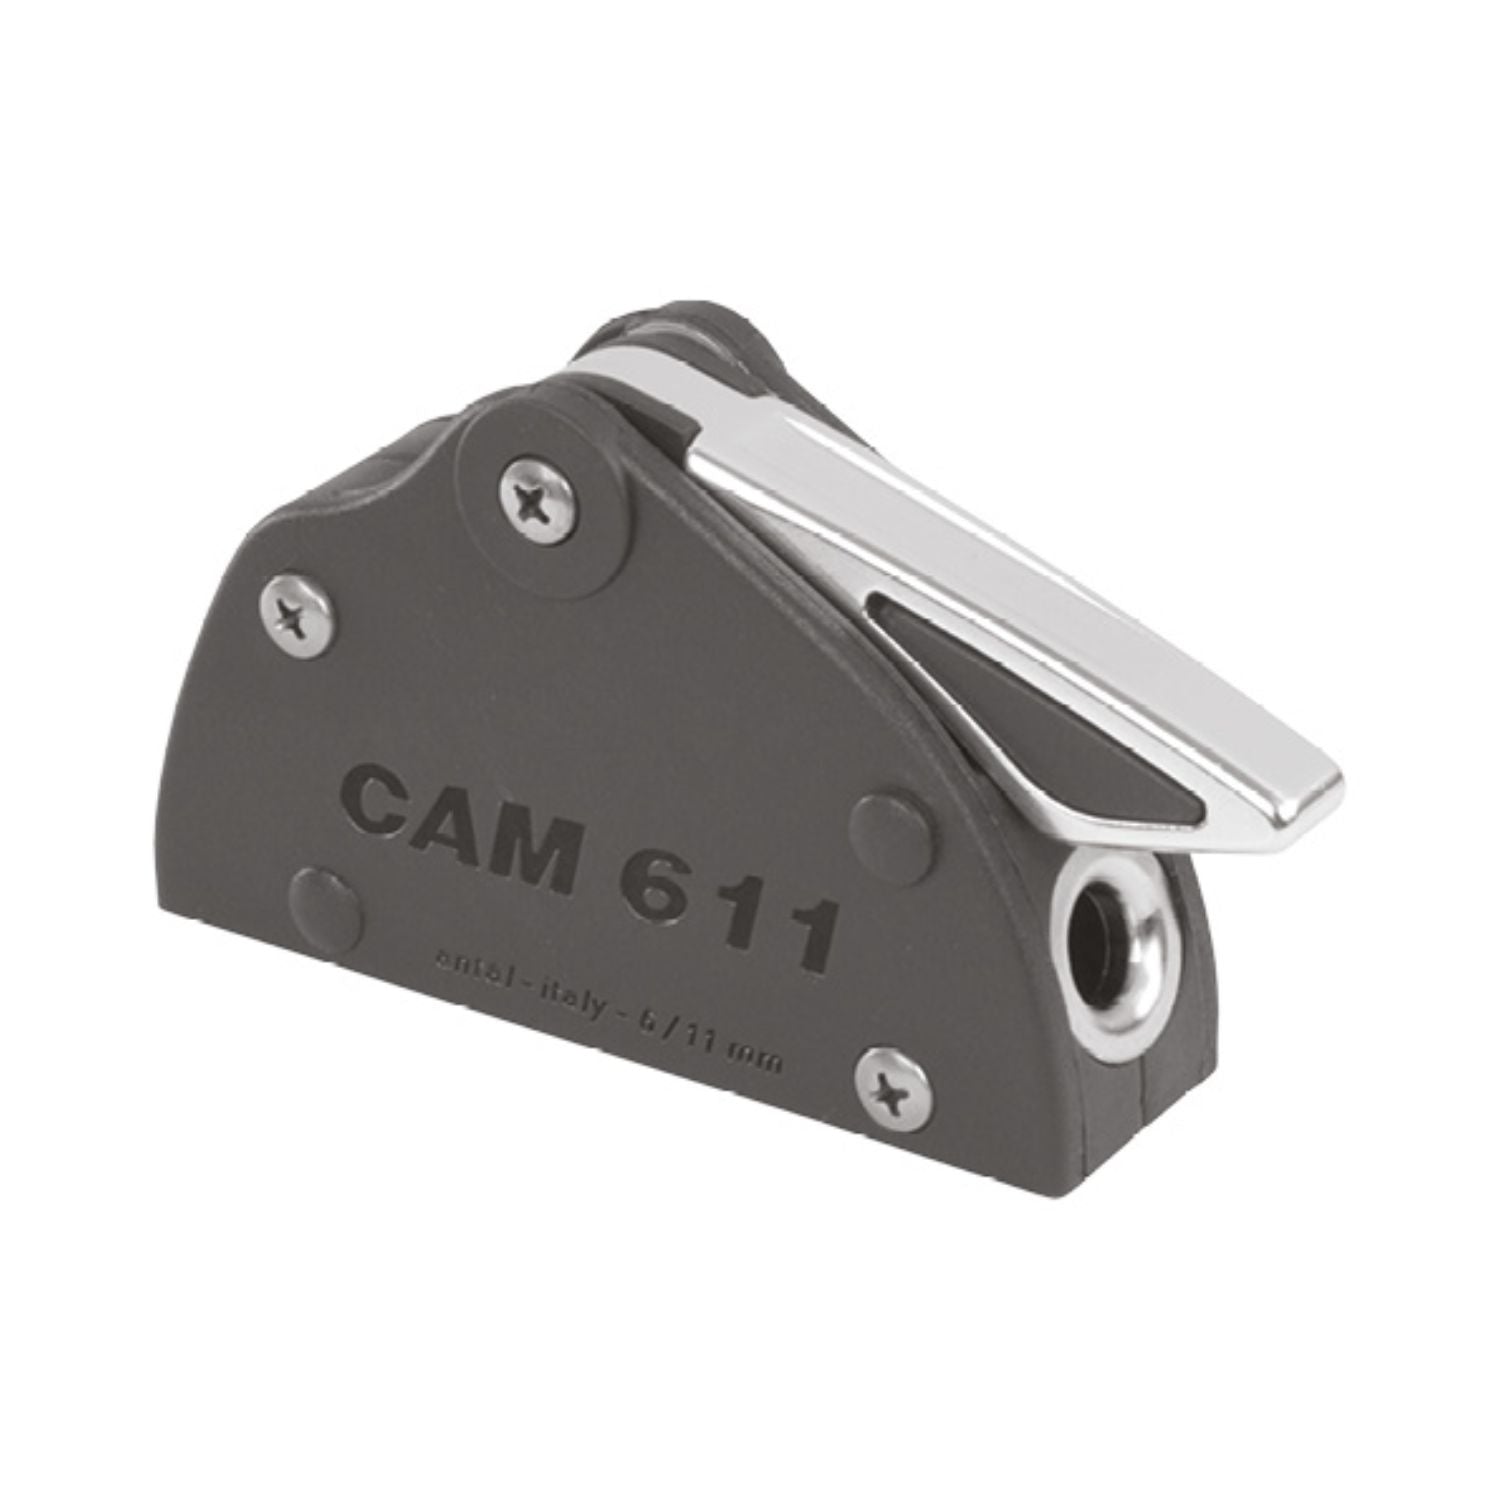 Antal Cam 611 Silver Enkel 6-10 mm